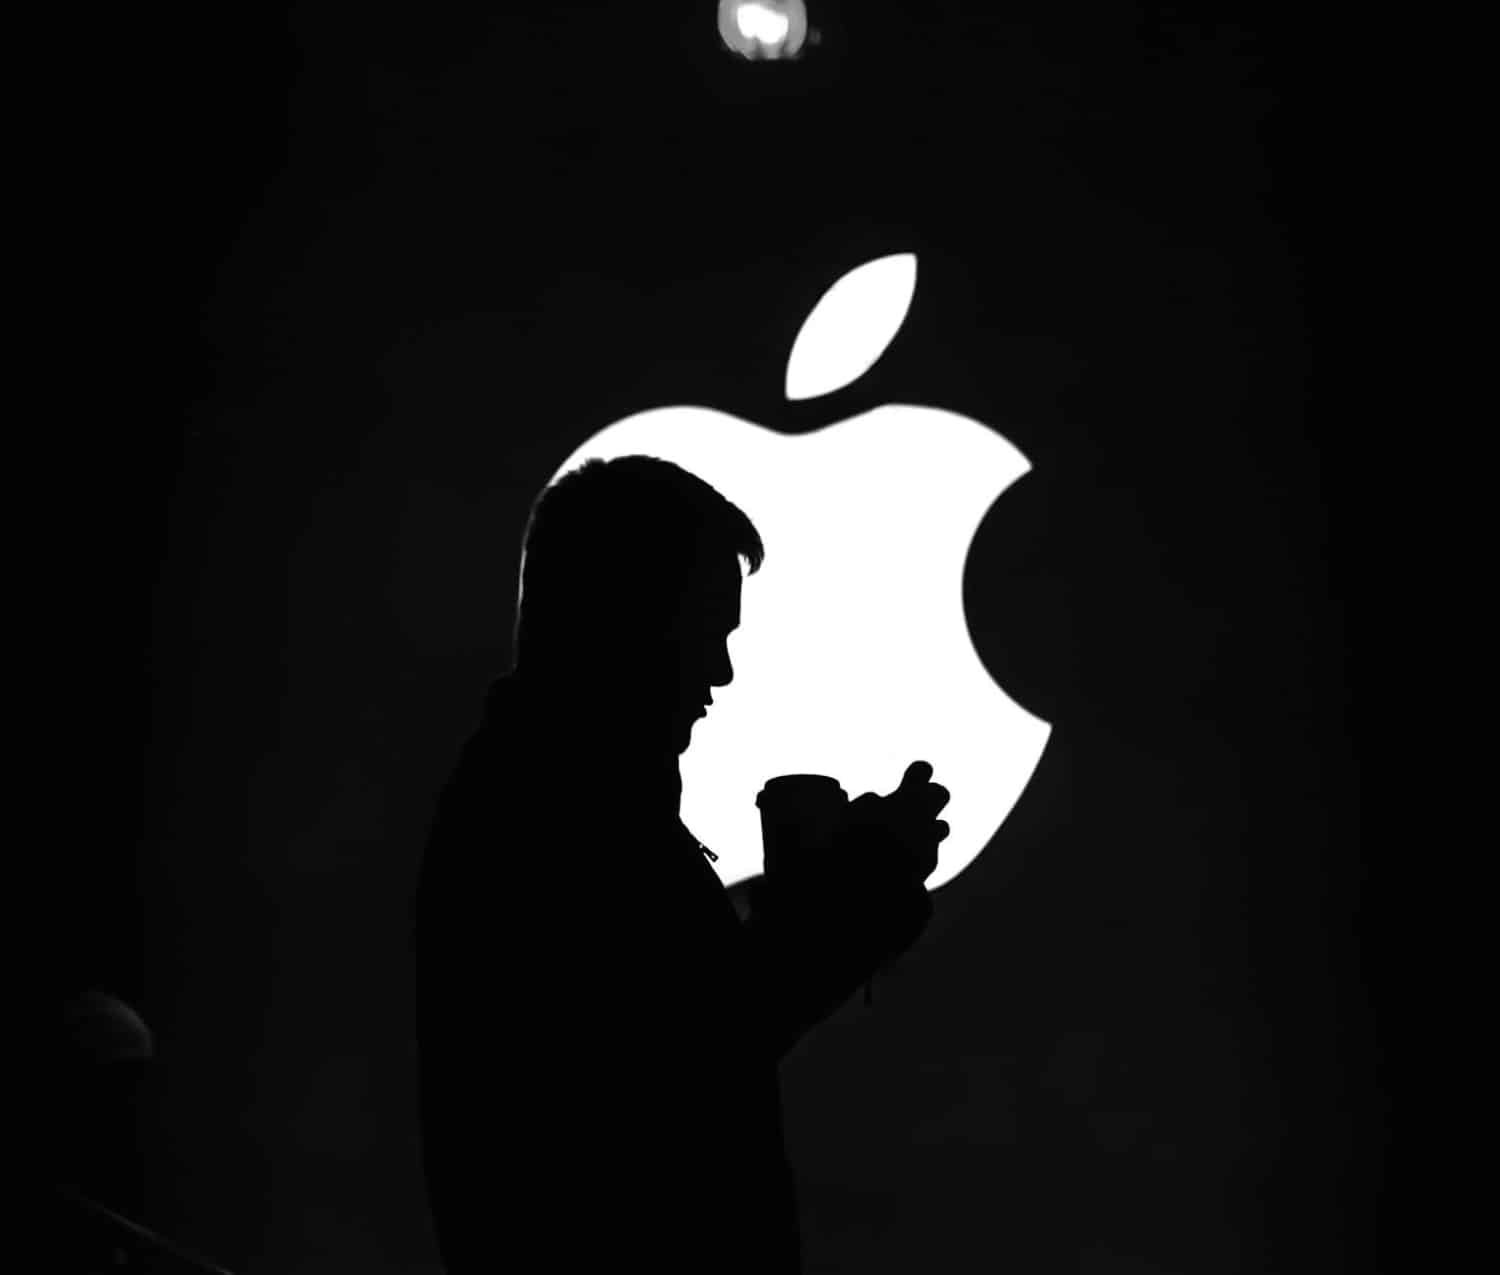 Apple elimina sus emblemáticos adhesivos en el marco de su plan de sostenibilidad.